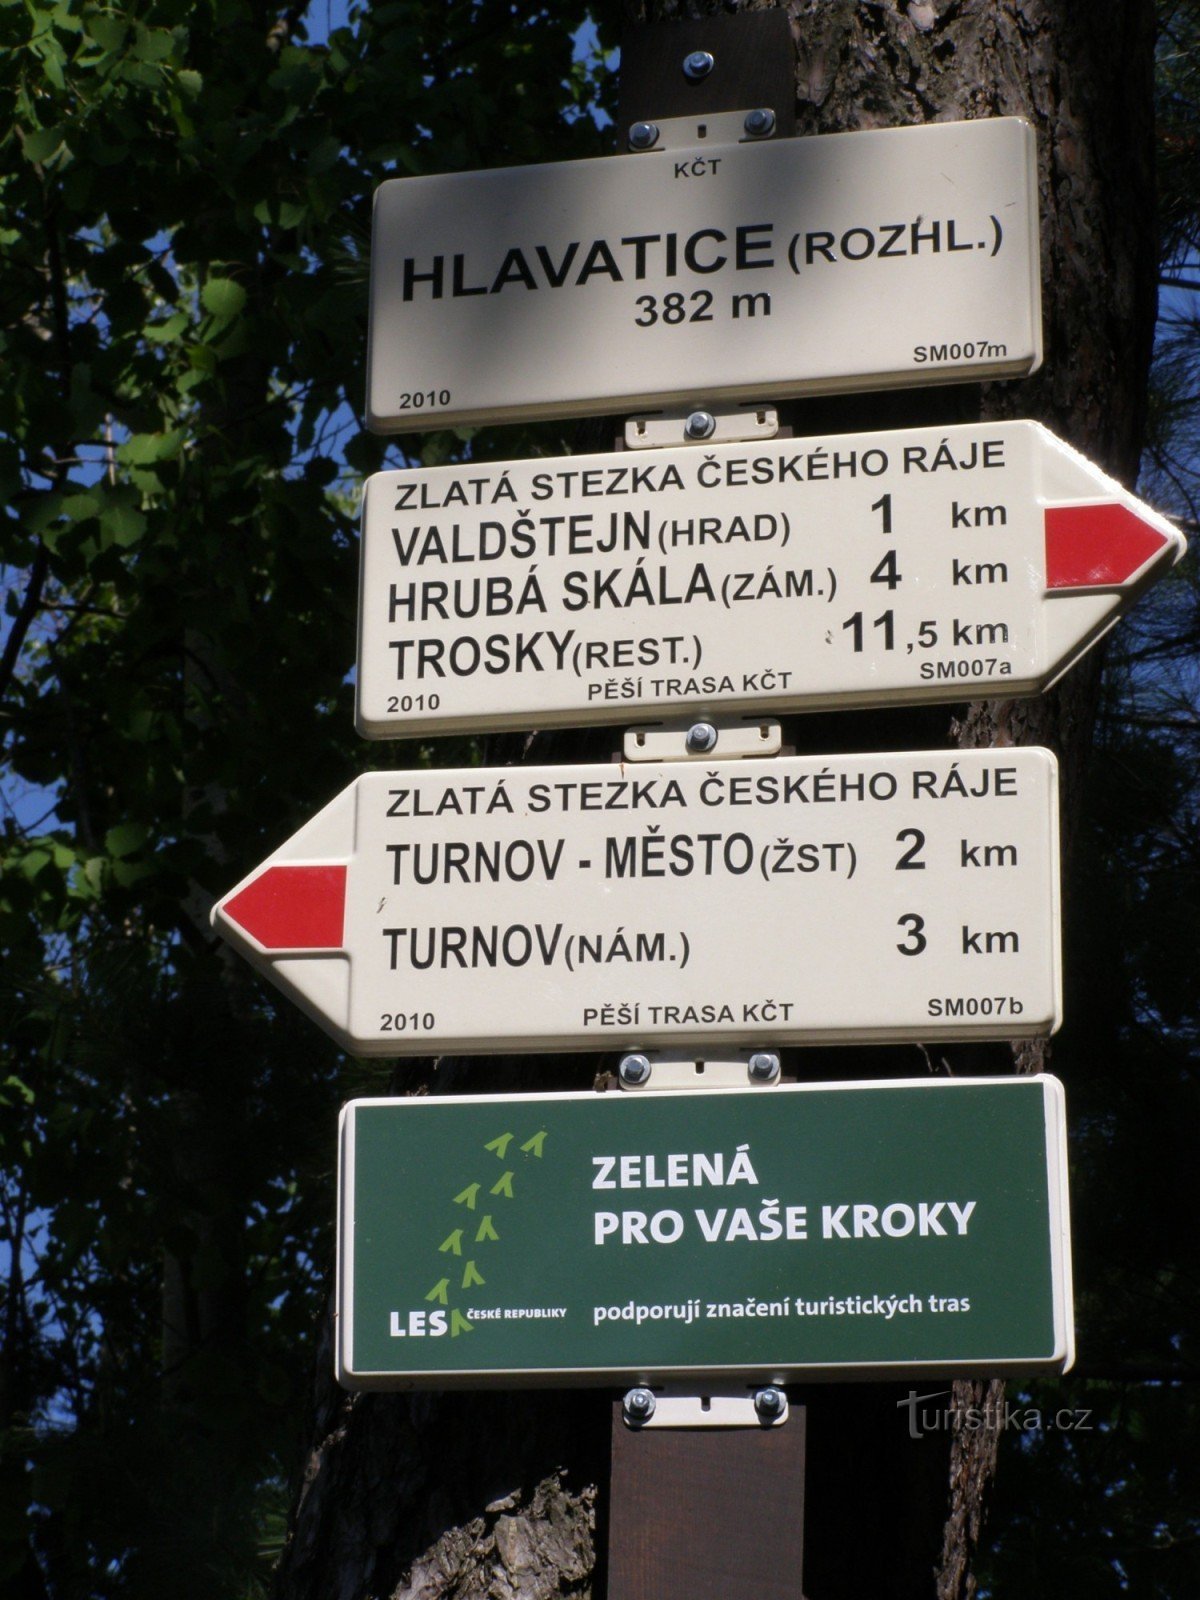 τουριστικό σταυροδρόμι Hlavatice